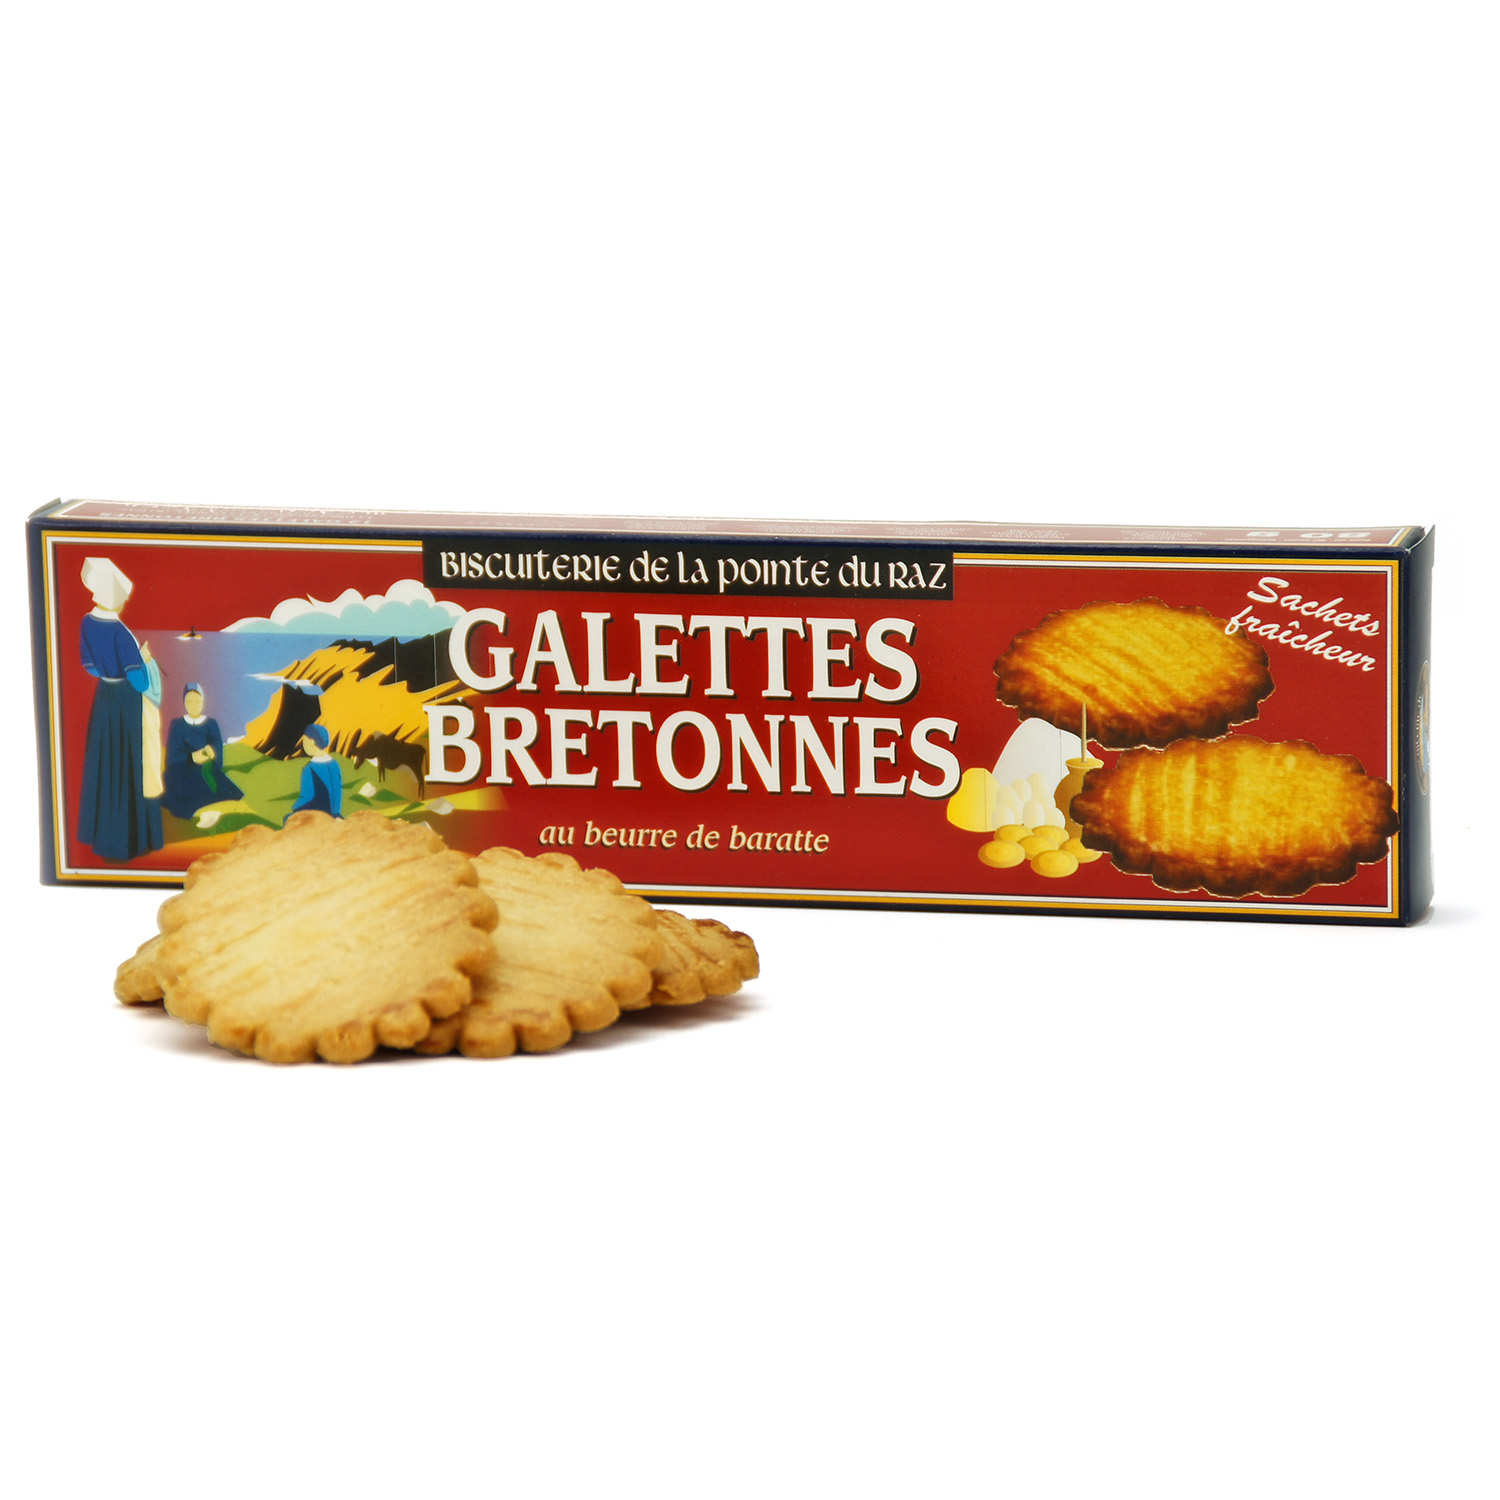 Les Biscuits - Pâtisseries bretonnes